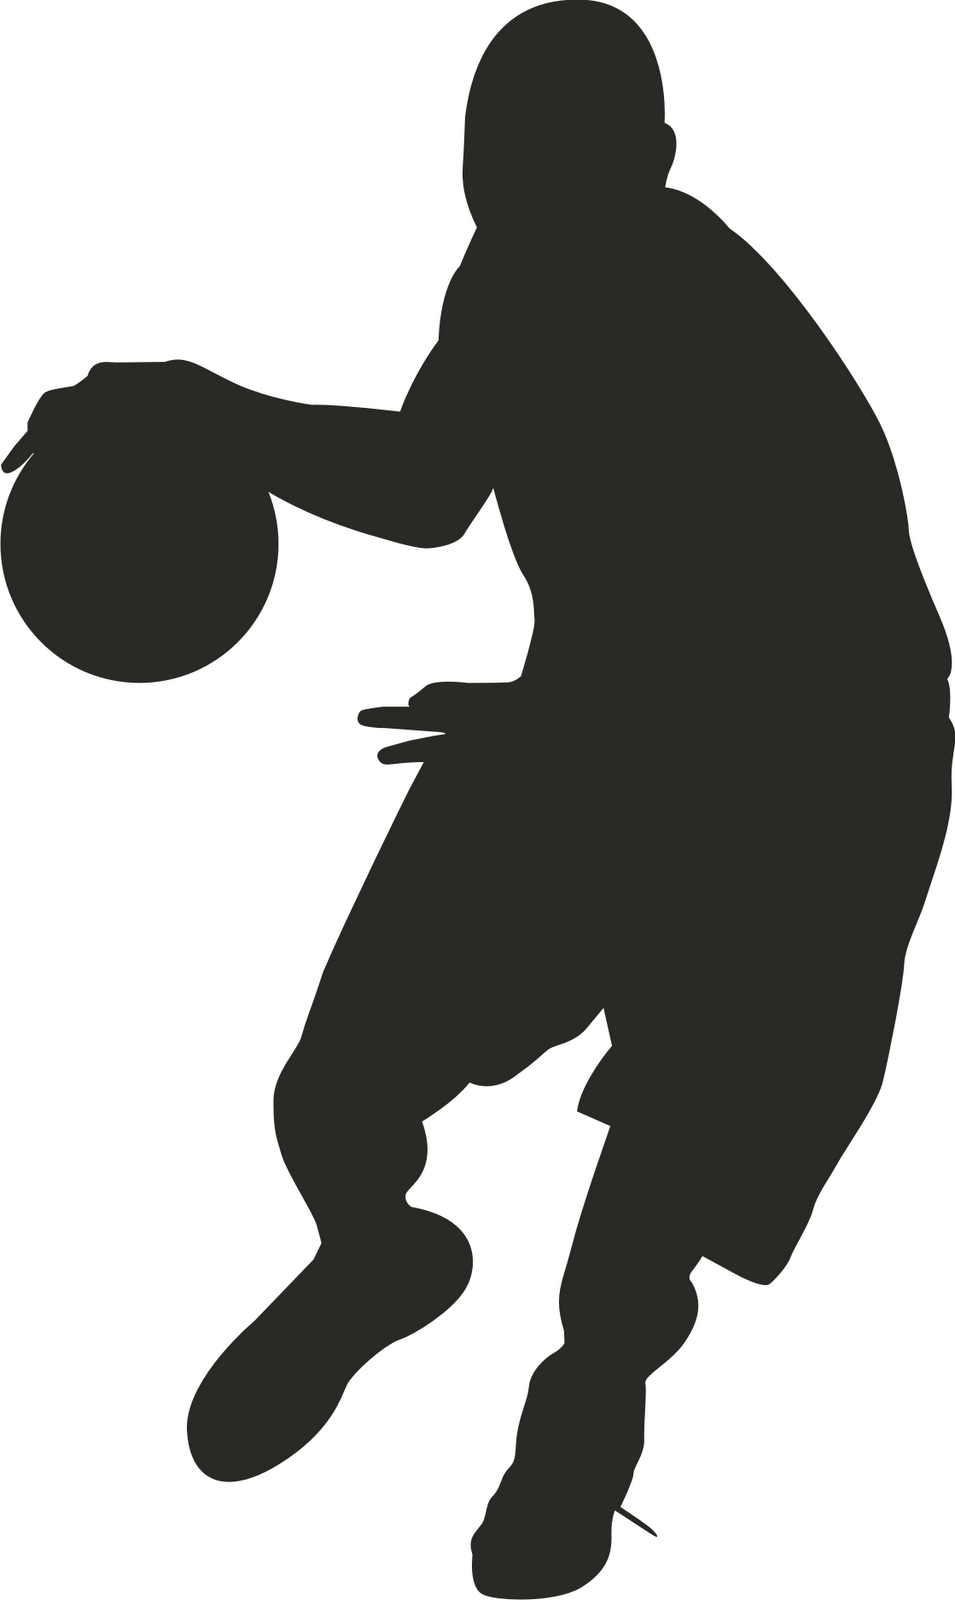 Basket Ball Vector - ClipArt Best